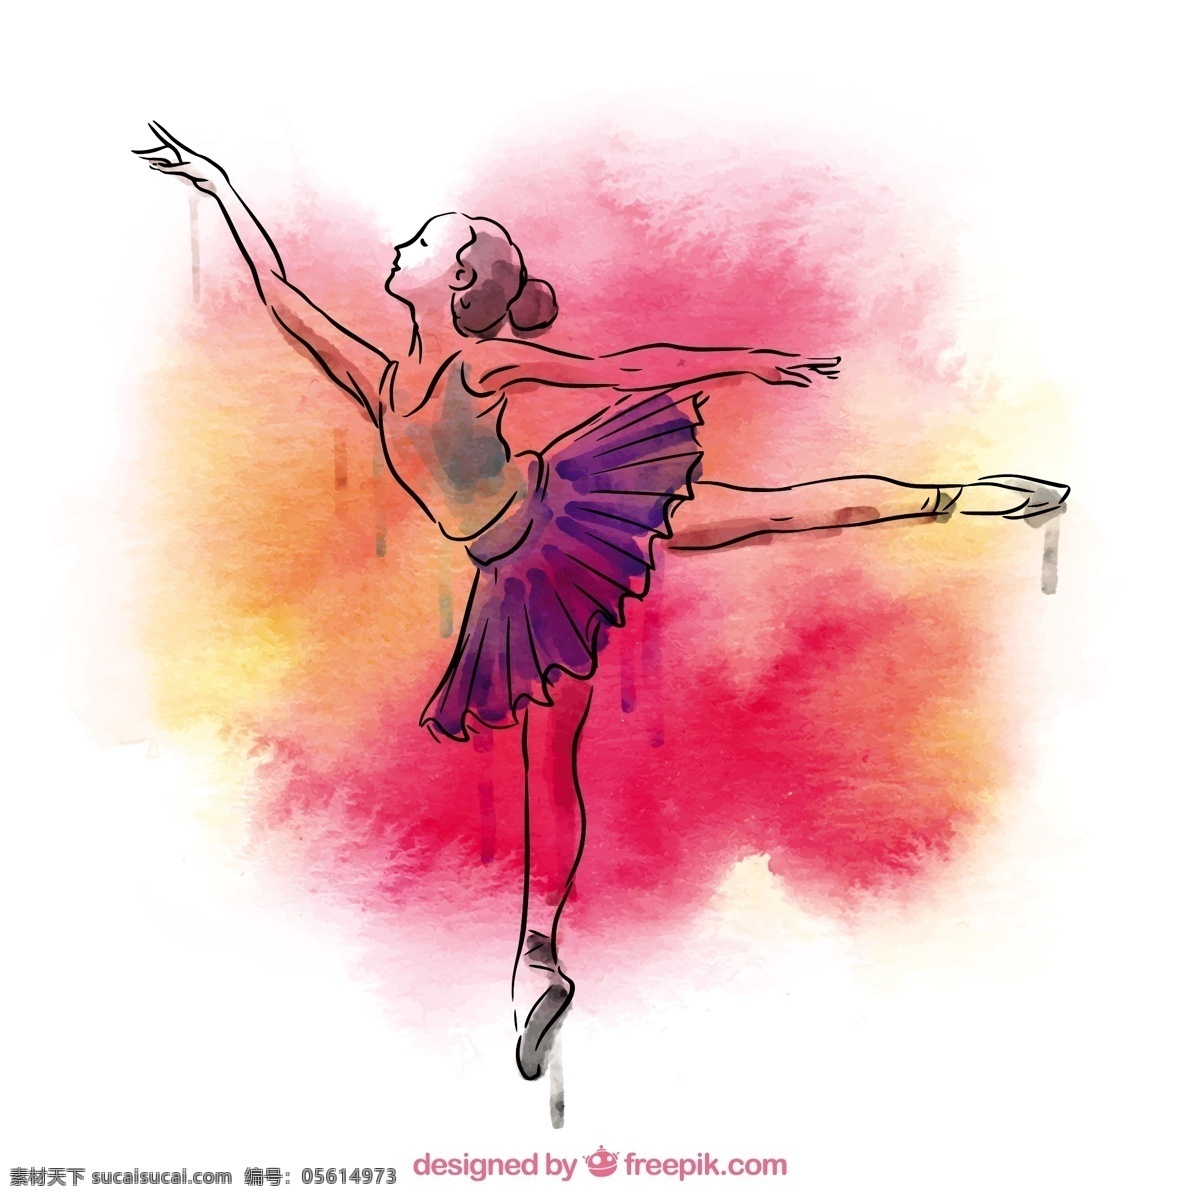 手绘 芭蕾舞 女演员 水彩 手 飞溅 舞蹈 手工绘制 艺术 绘画 芭蕾 舞蹈家 艺术家 拉 移动 运动 素描 跳舞 女孩 白色